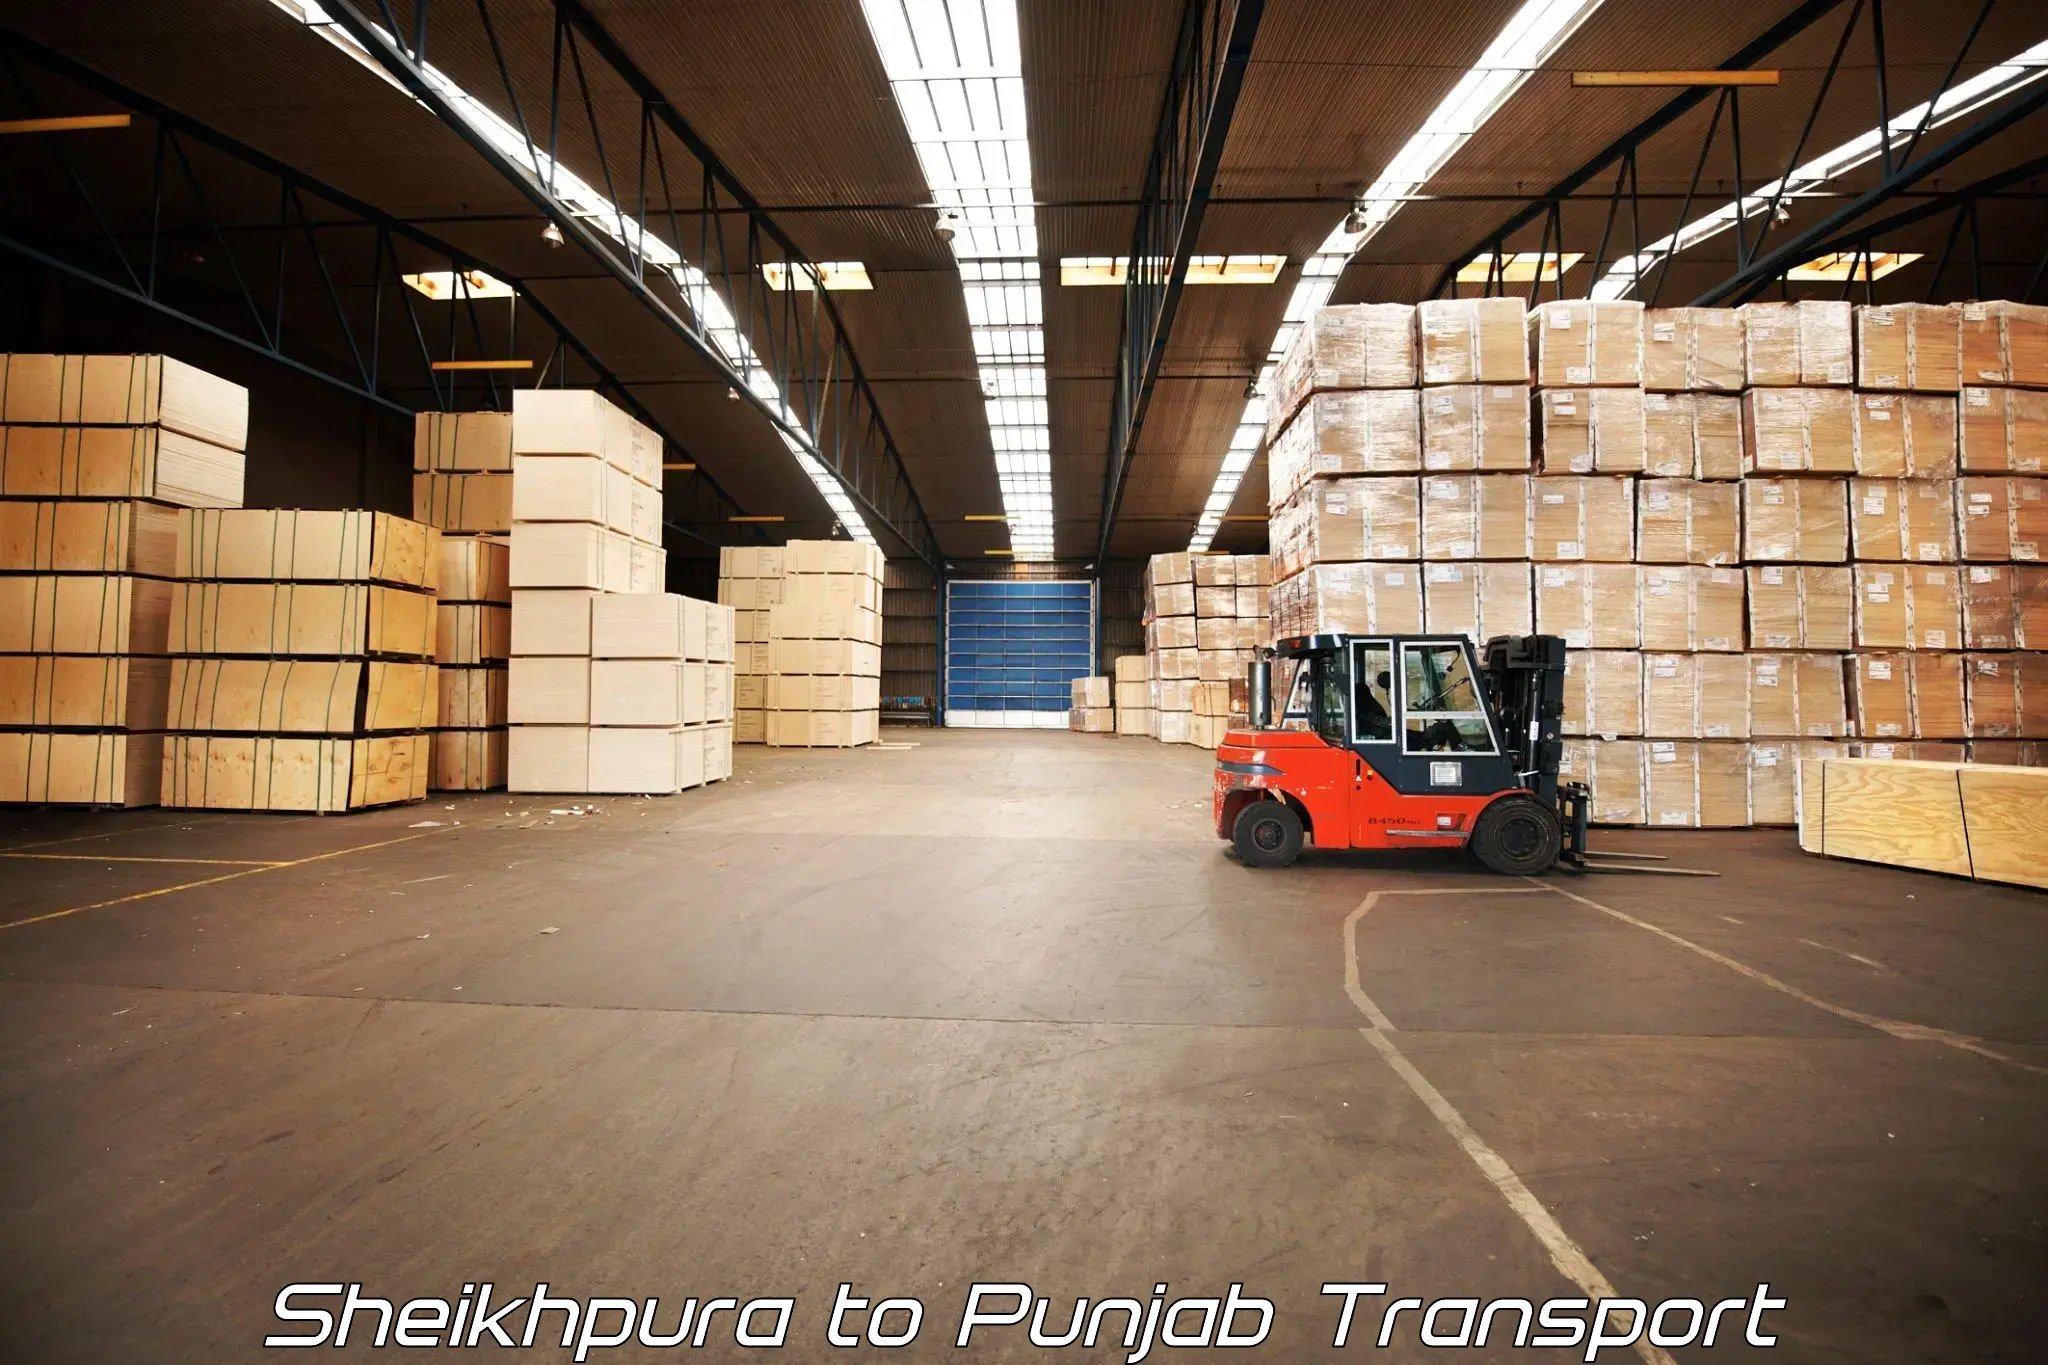 Cargo train transport services Sheikhpura to Dinanagar